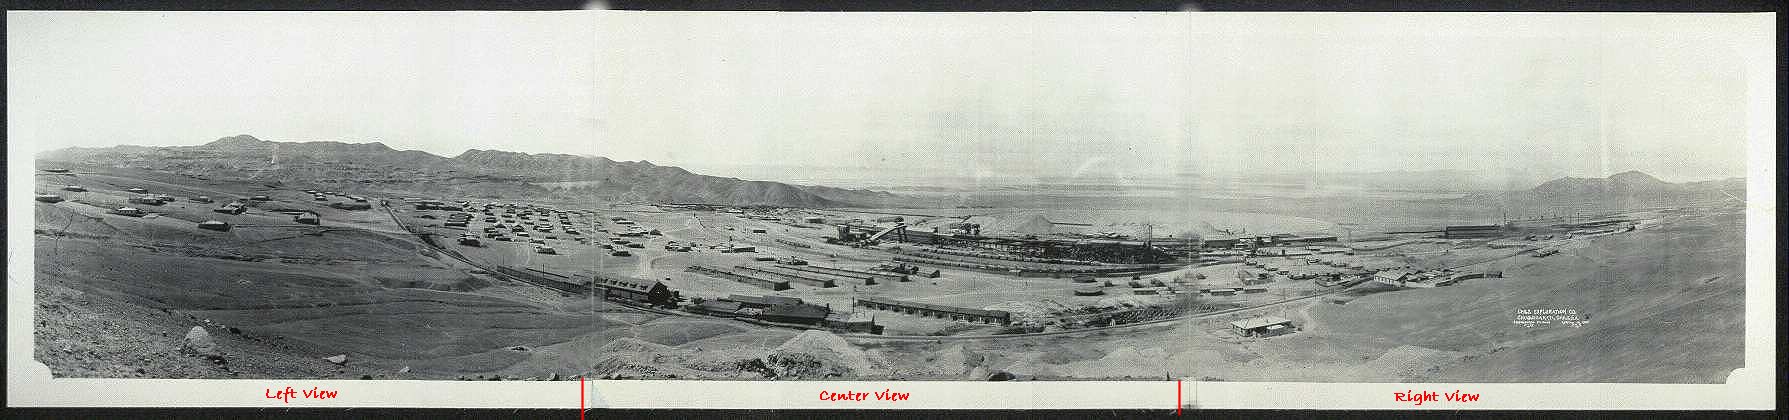 ..//images//panoramic_photograh_taken_in_1929.jpg